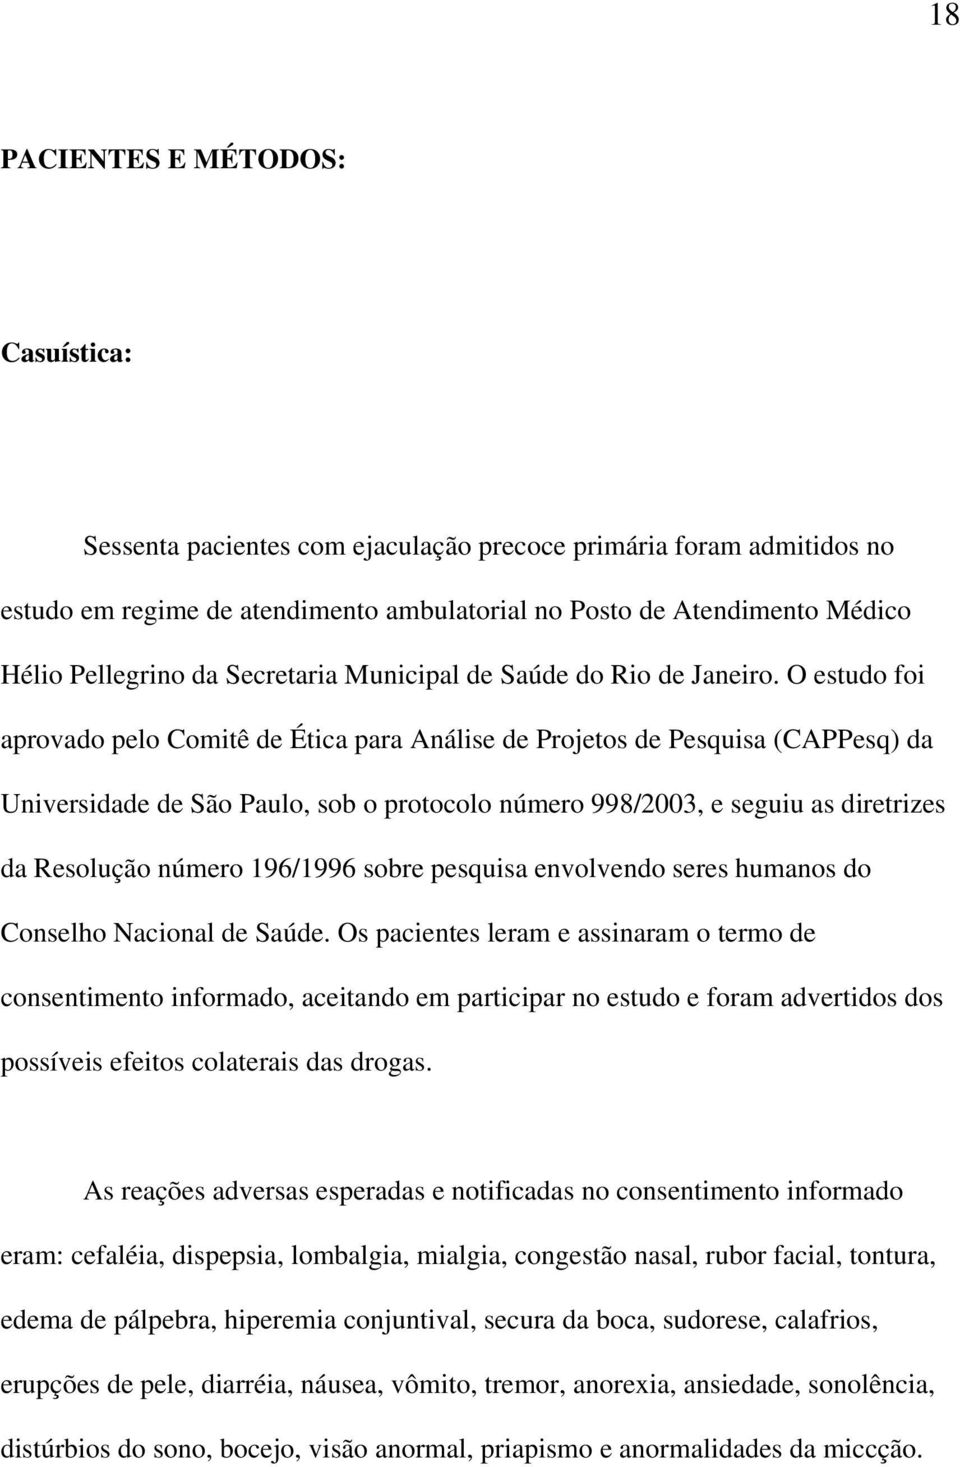 O estudo foi aprovado pelo Comitê de Ética para Análise de Projetos de Pesquisa (CAPPesq) da Universidade de São Paulo, sob o protocolo número 998/2003, e seguiu as diretrizes da Resolução número